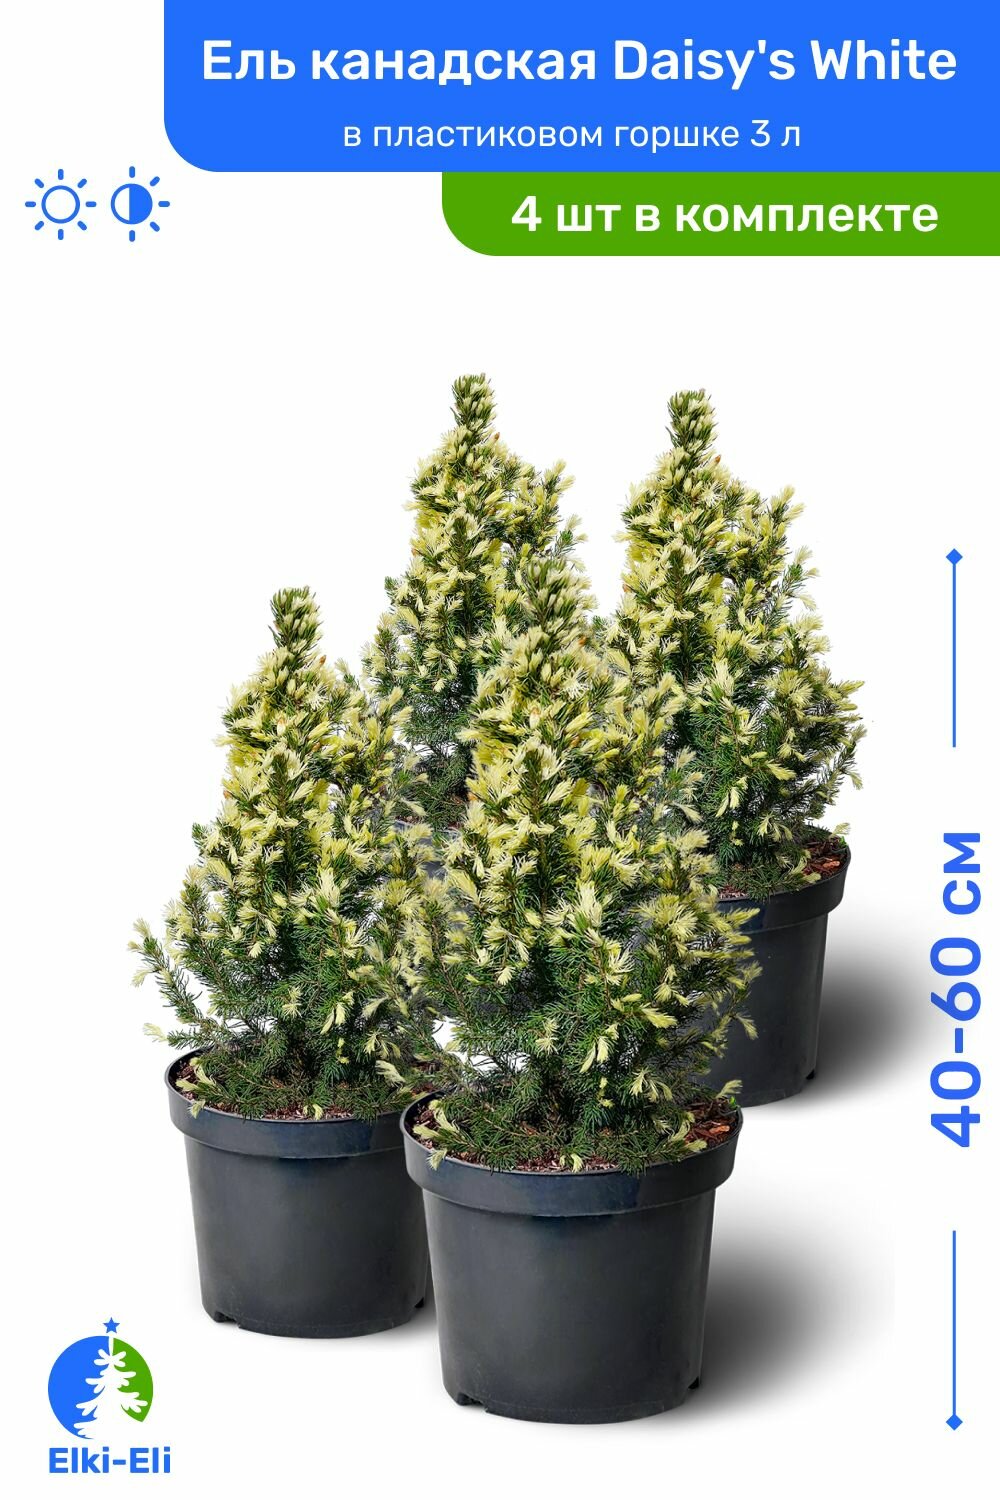 Ель канадская Daisys White (Дейзи Вайт) 40-60 см в пластиковом горшке 3 л саженец хвойное живое растение комплект из 4 шт